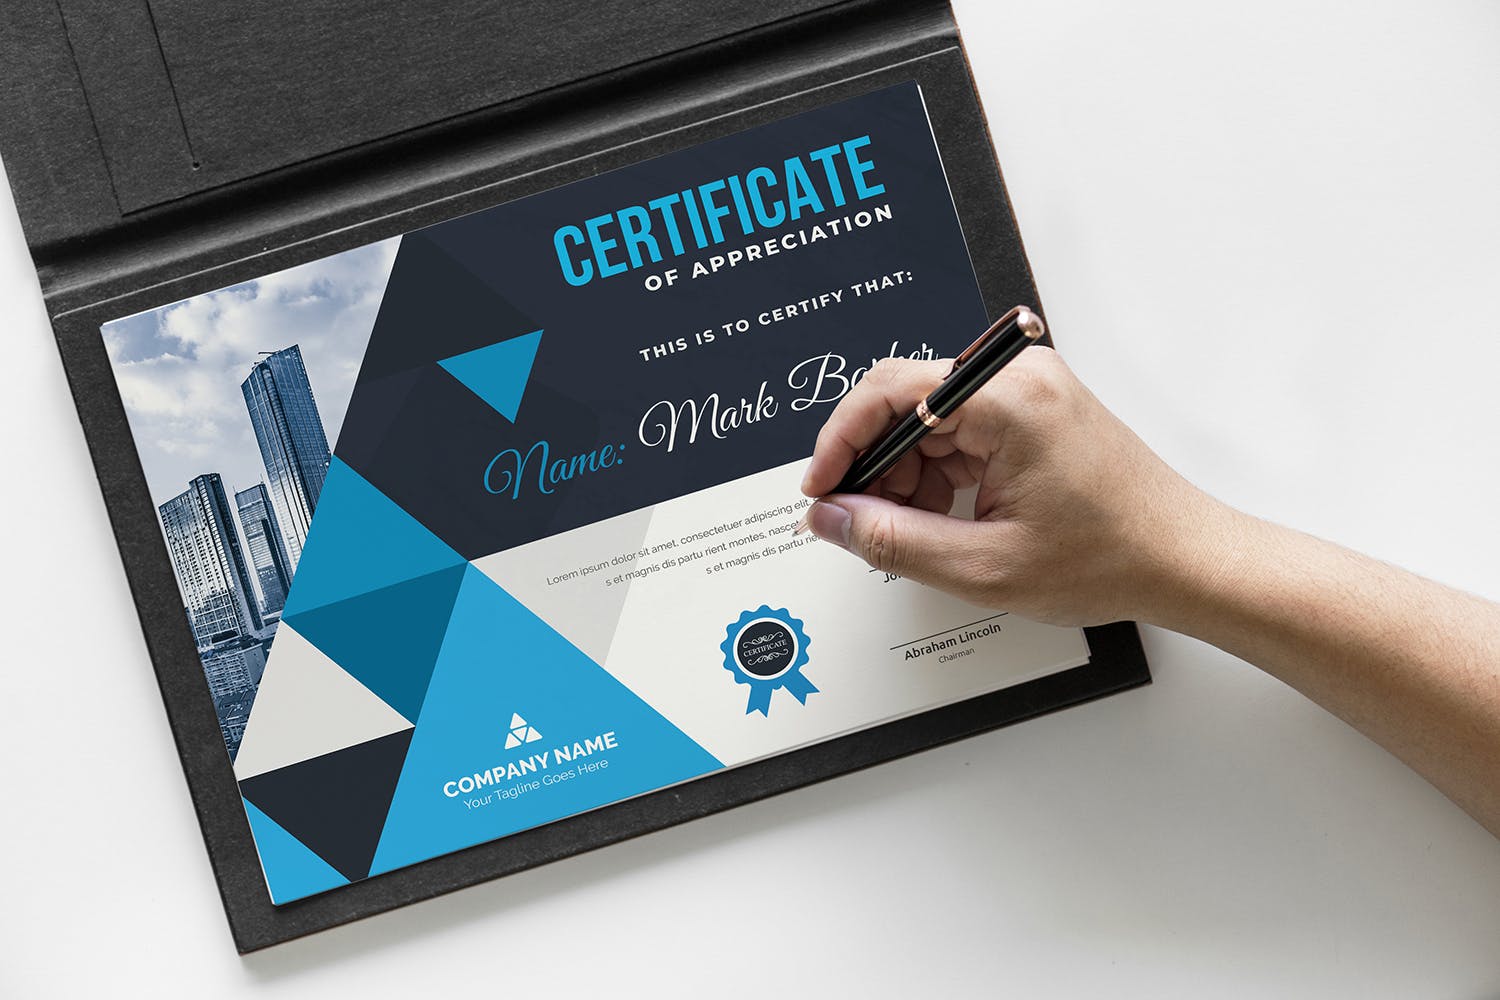 品牌销售代理/资格认证证书设计模板 Certificate插图(3)